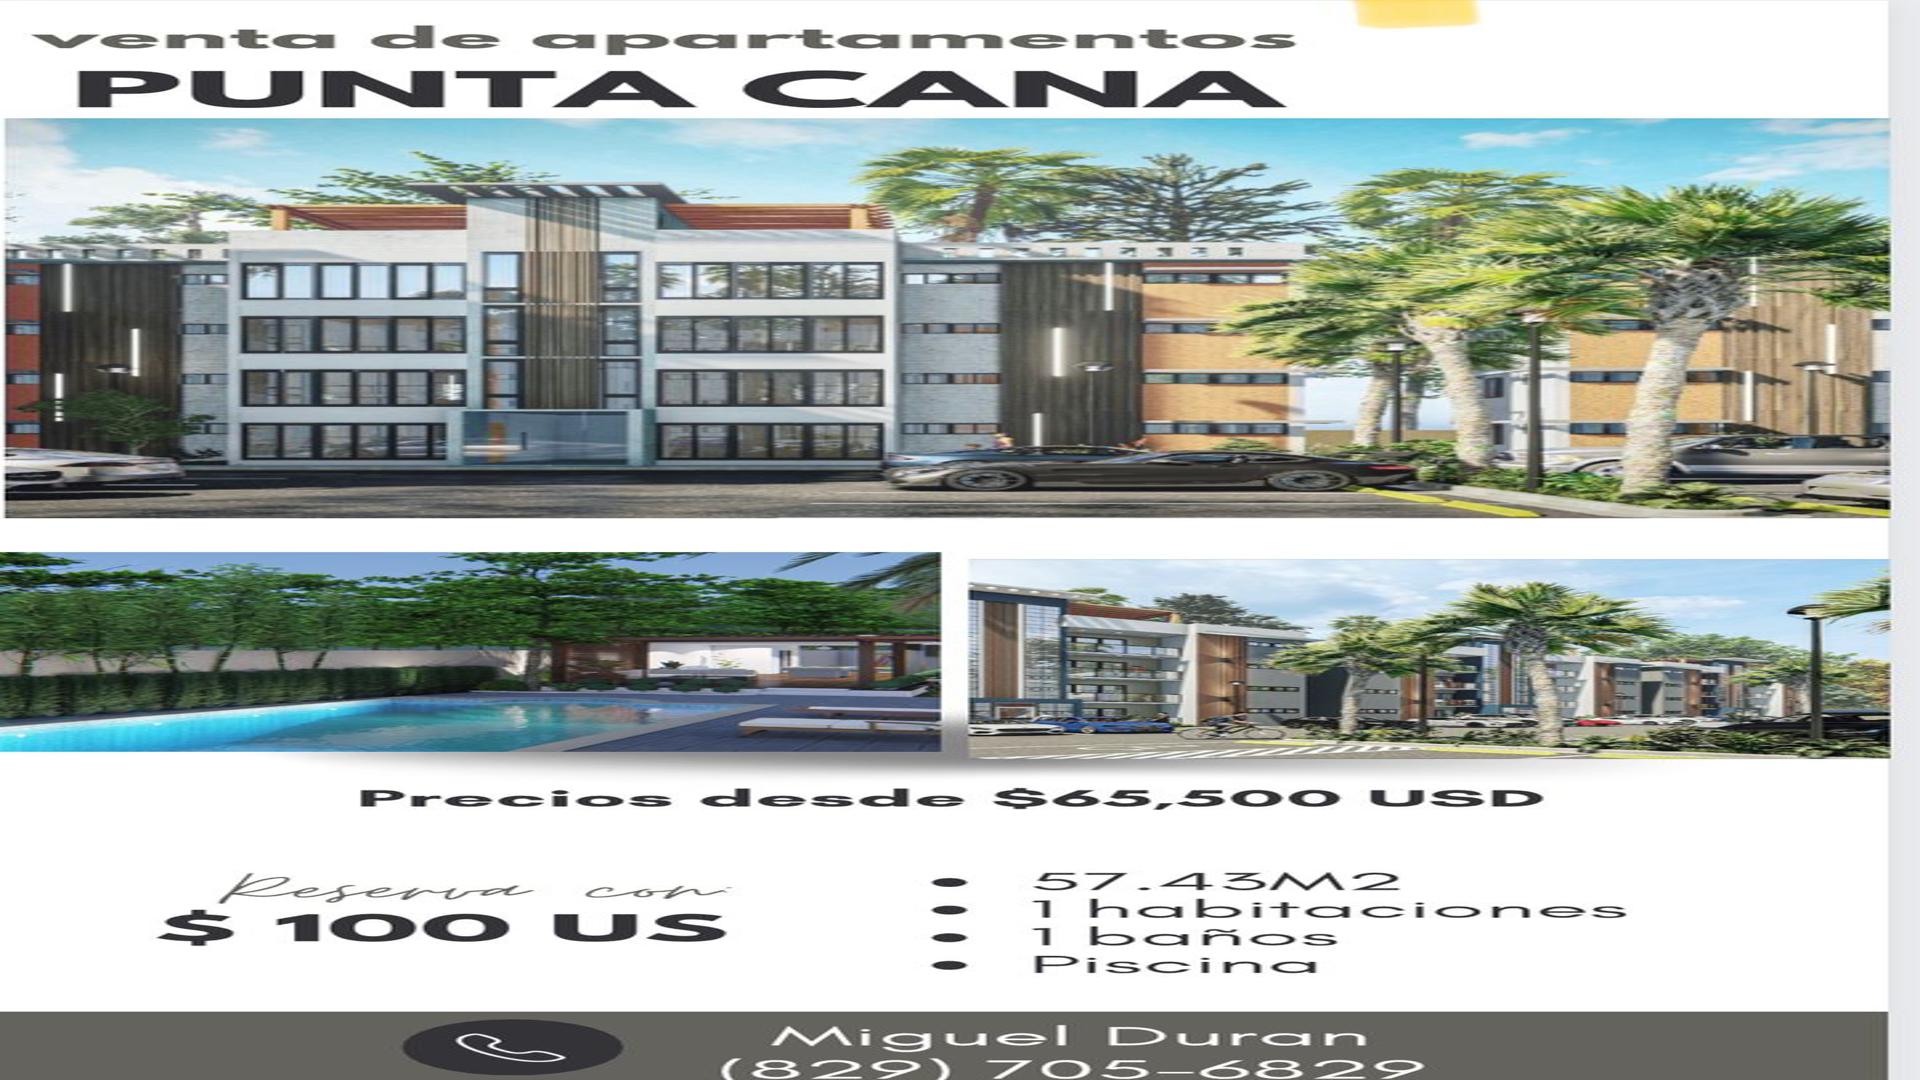 apartamentos - Venta de apartamentos en punta cana Republica Dominicana 5